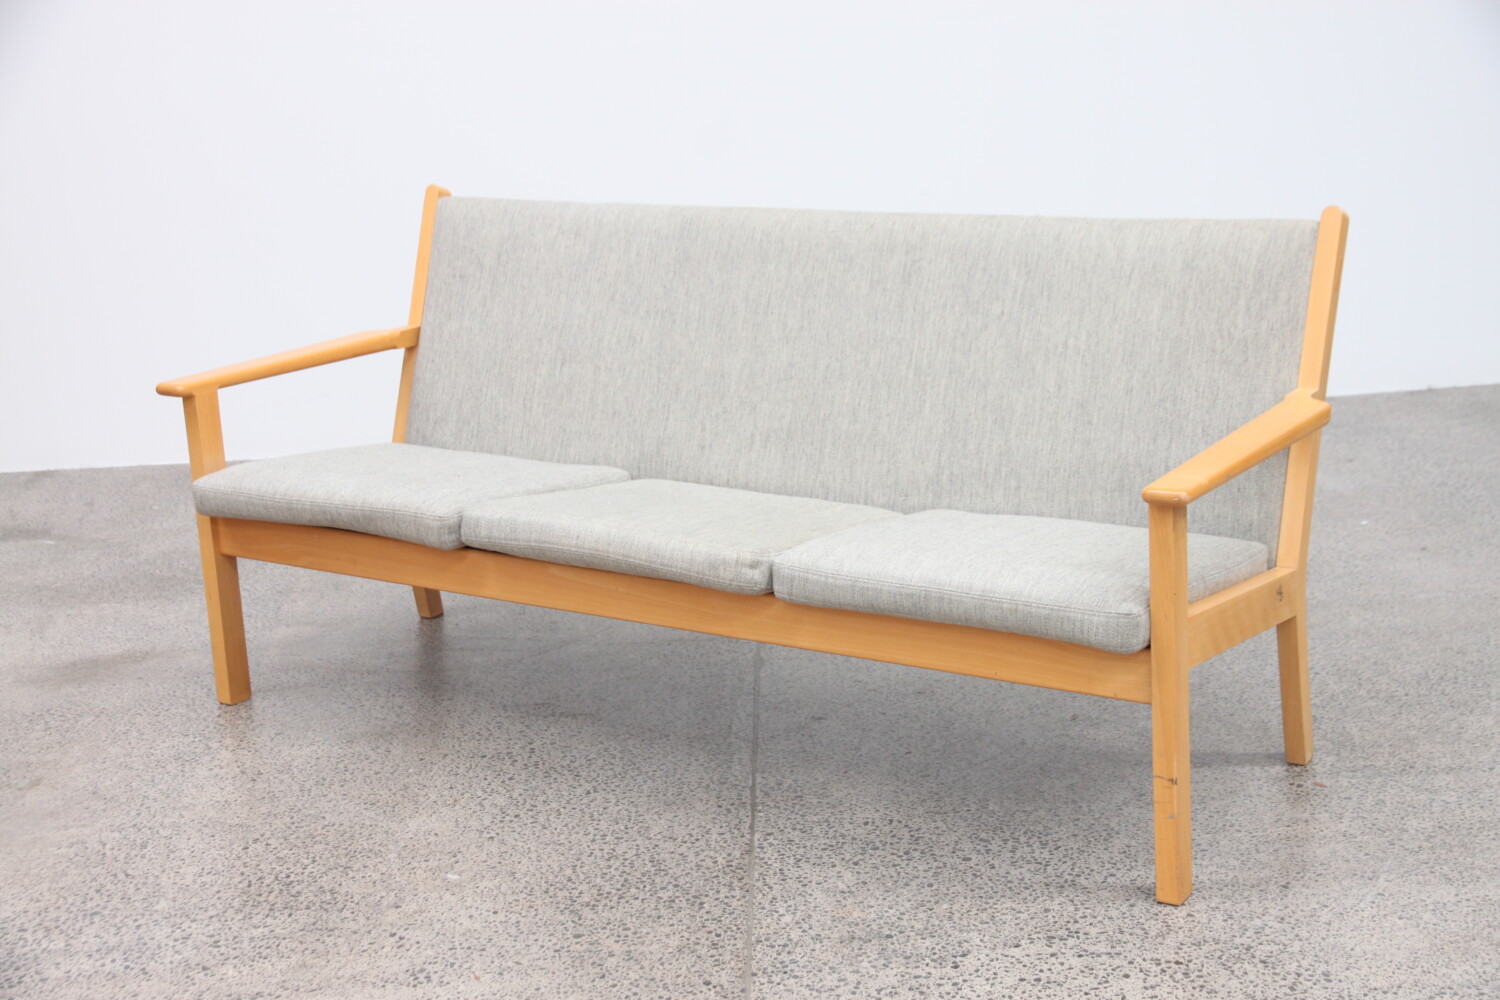 Sofa by Hans Wegner